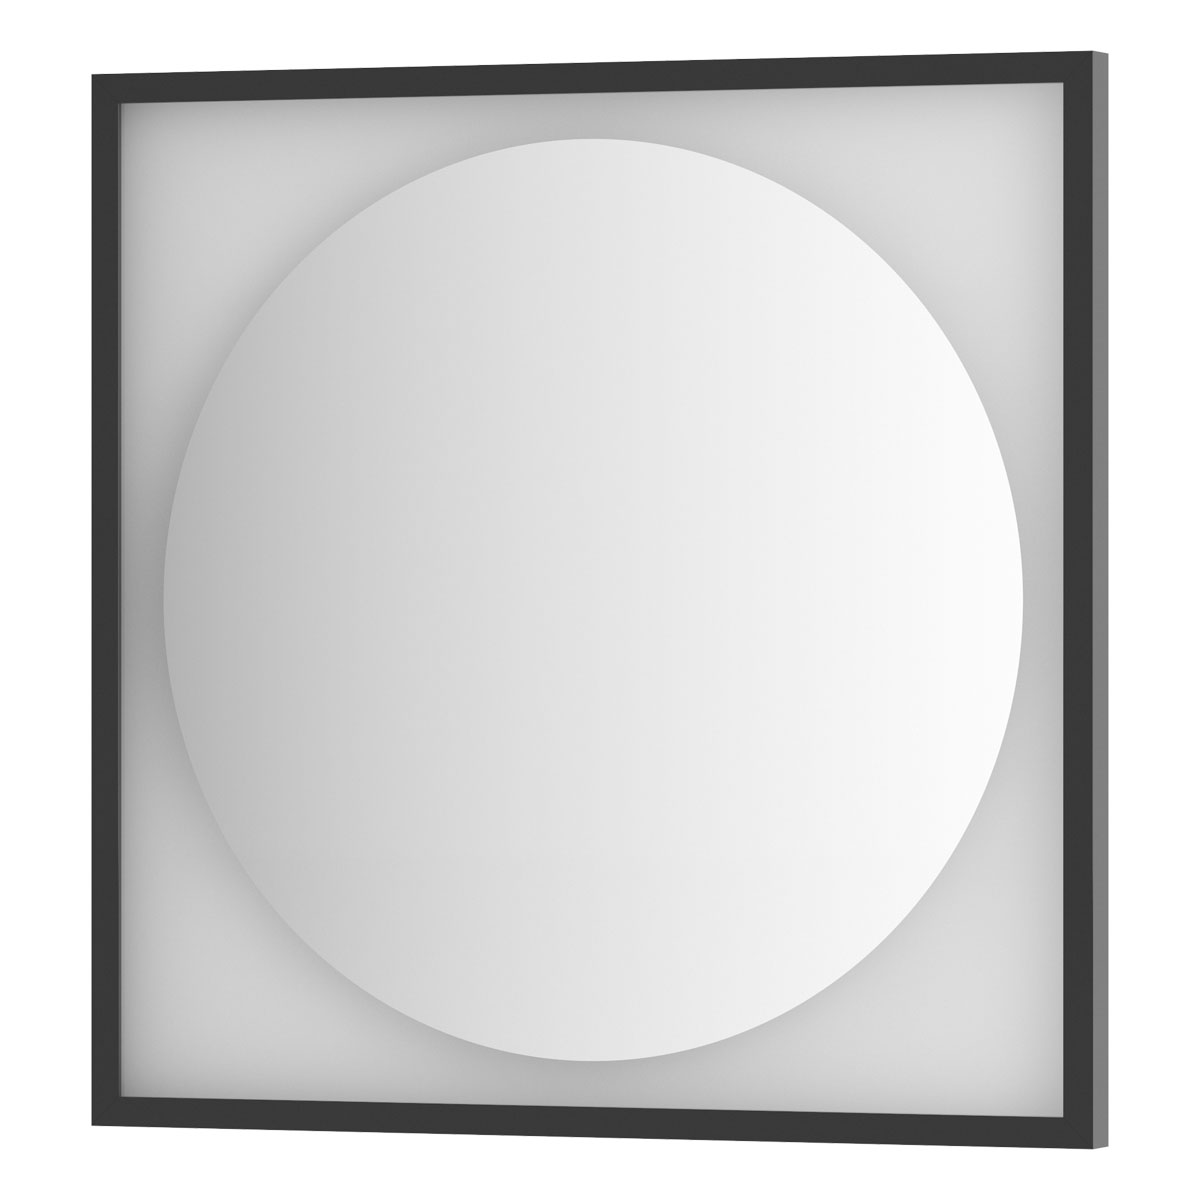 Зеркало Defesto с LED-подсветкой без выключателя 15 W нейтральный белый свет, черная рама 70x70 см